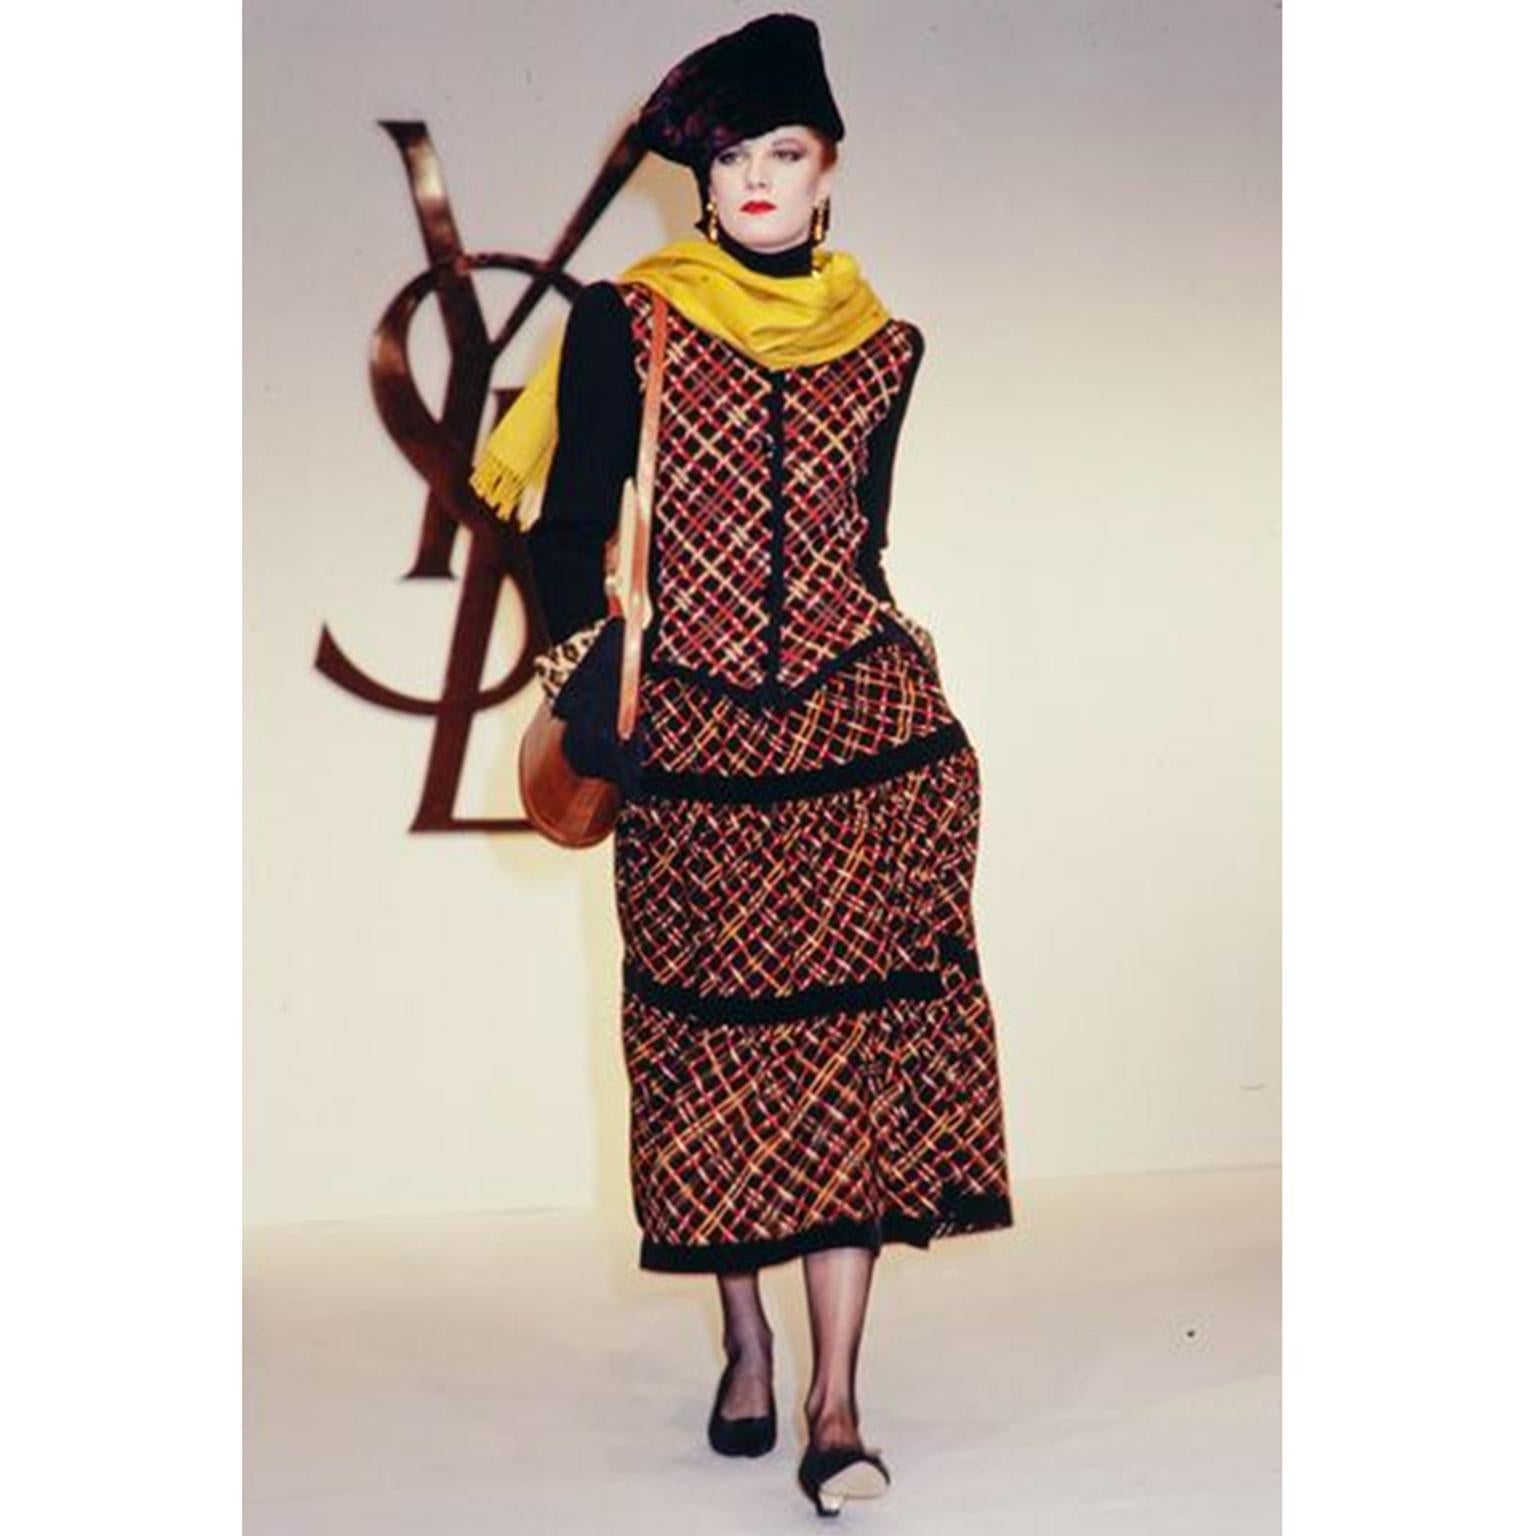 Dies ist ein dokumentiertes Yves Saint Laurent Vintage Ensemble aus der YSL Fall / Winter 1983 Collection. Dieses 3-teilige Vintage-Kleid-Outfit besteht aus einem orange-braun karierten Rock, einer Bluse und einer Strickjacke. Dieses Kleid ist eine